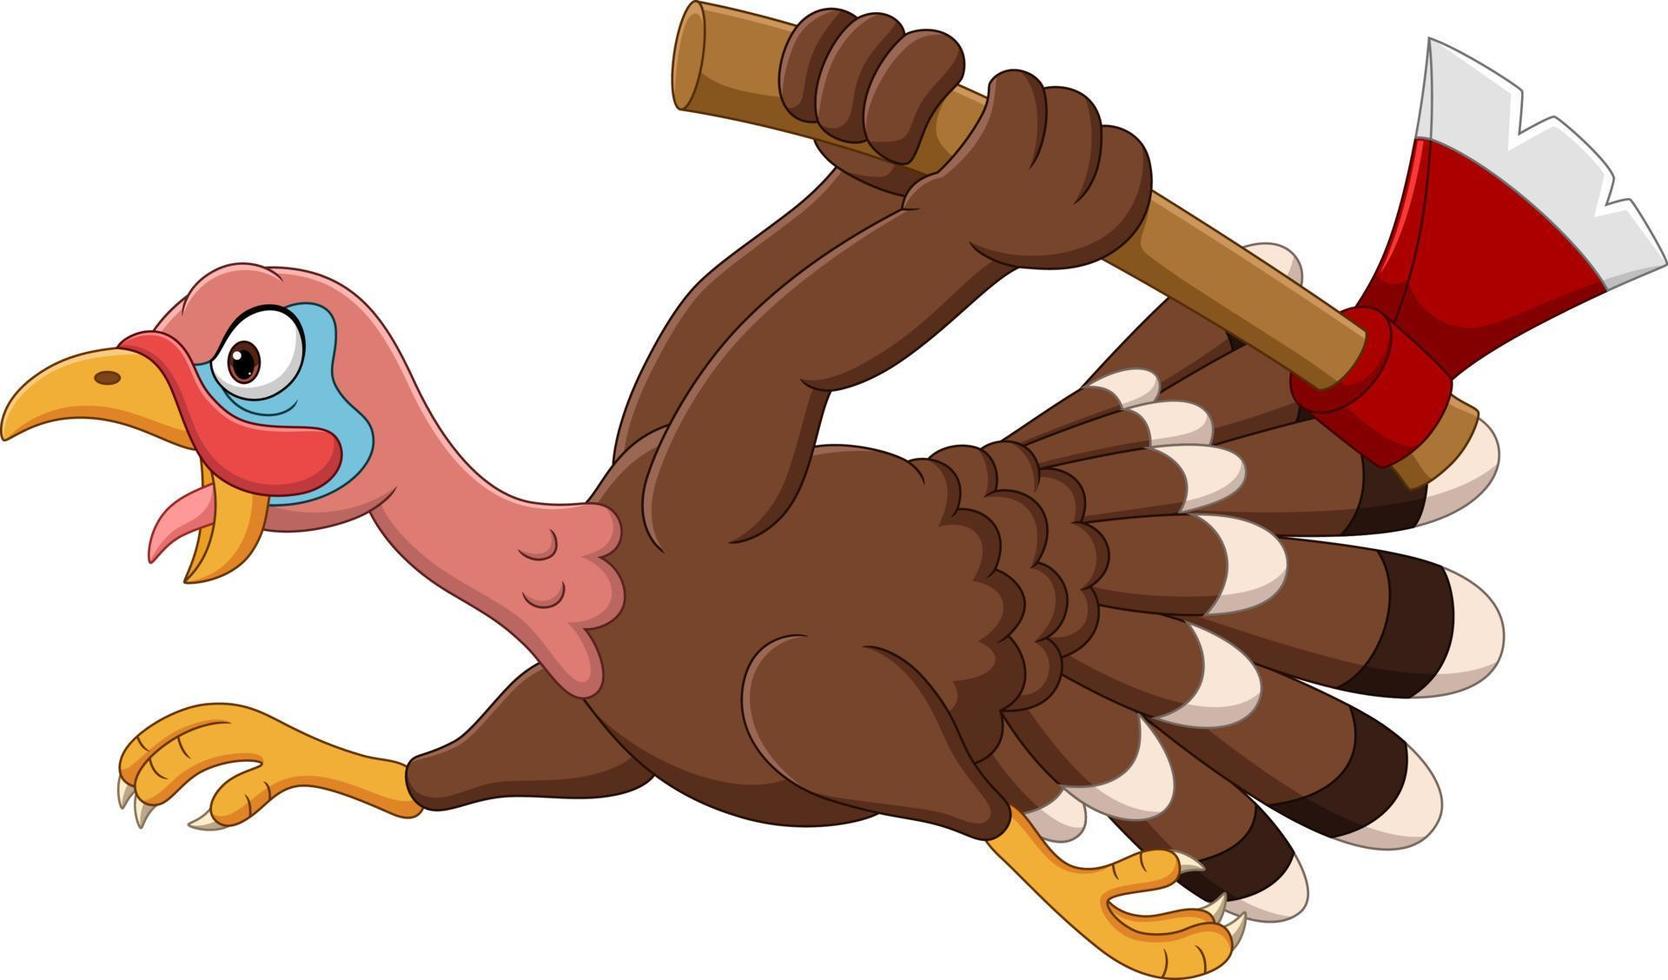 Cartoon funny turkey bird running vector